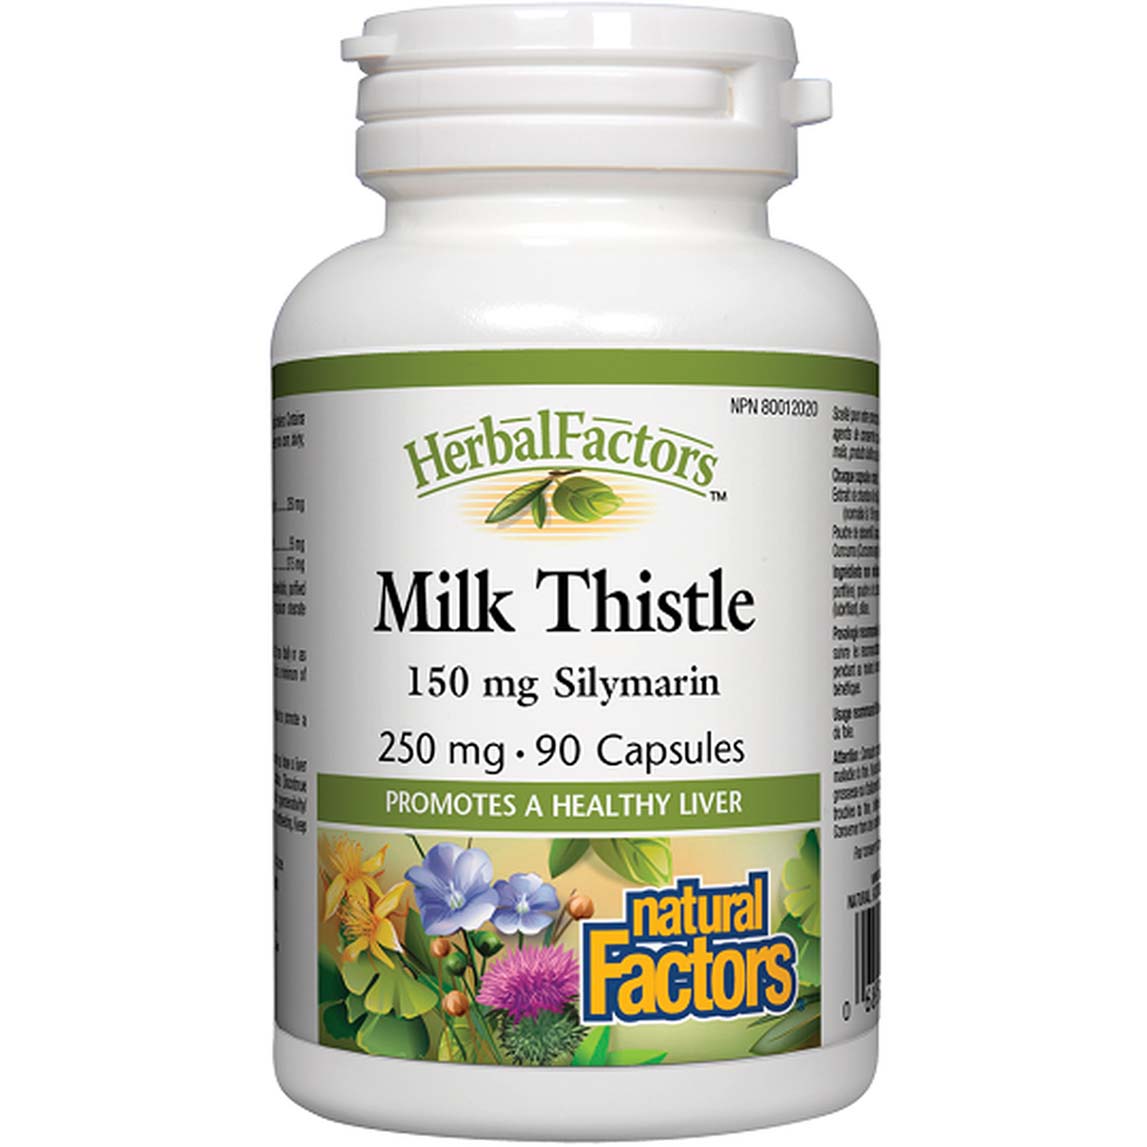 Natural Factors Milk Thistle, 250 mg, 90 Capsules